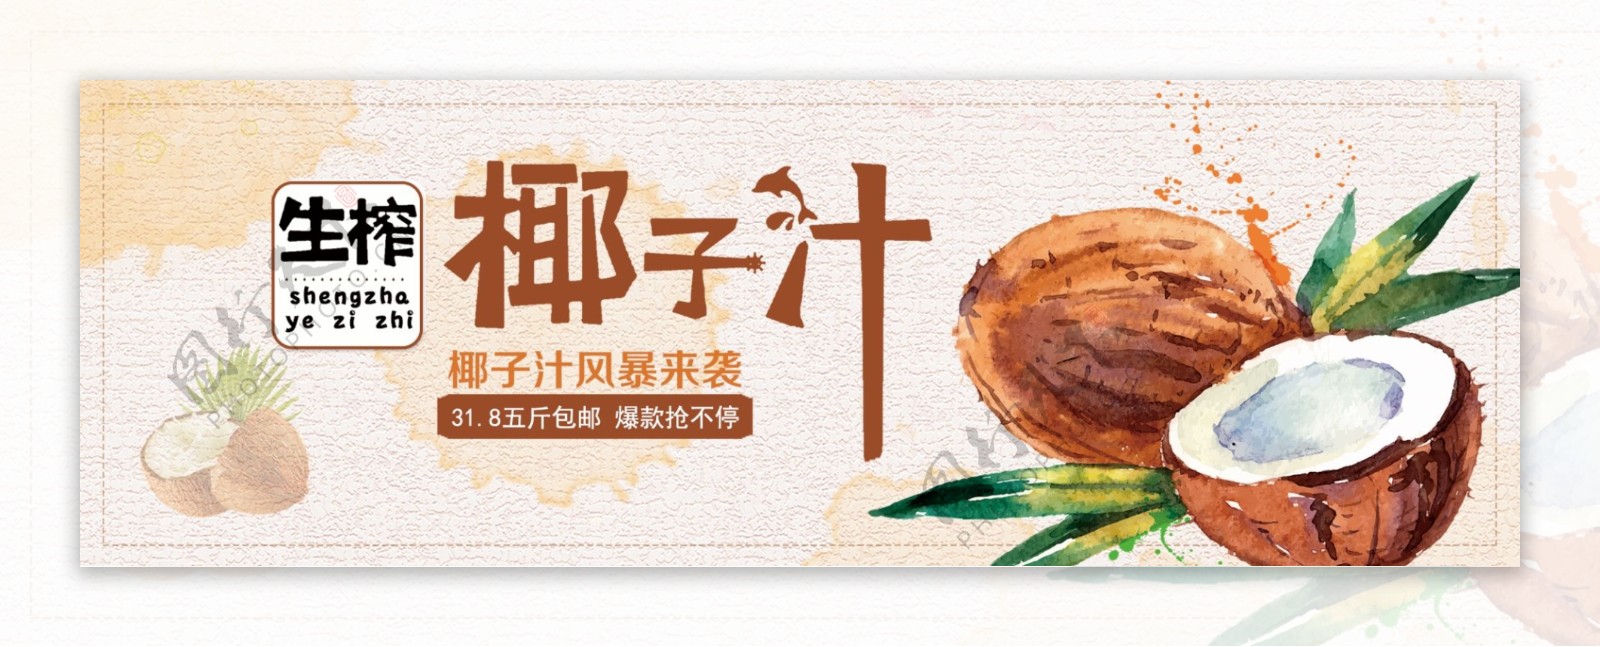 清新文艺饮品水果椰子椰汁淘宝banner